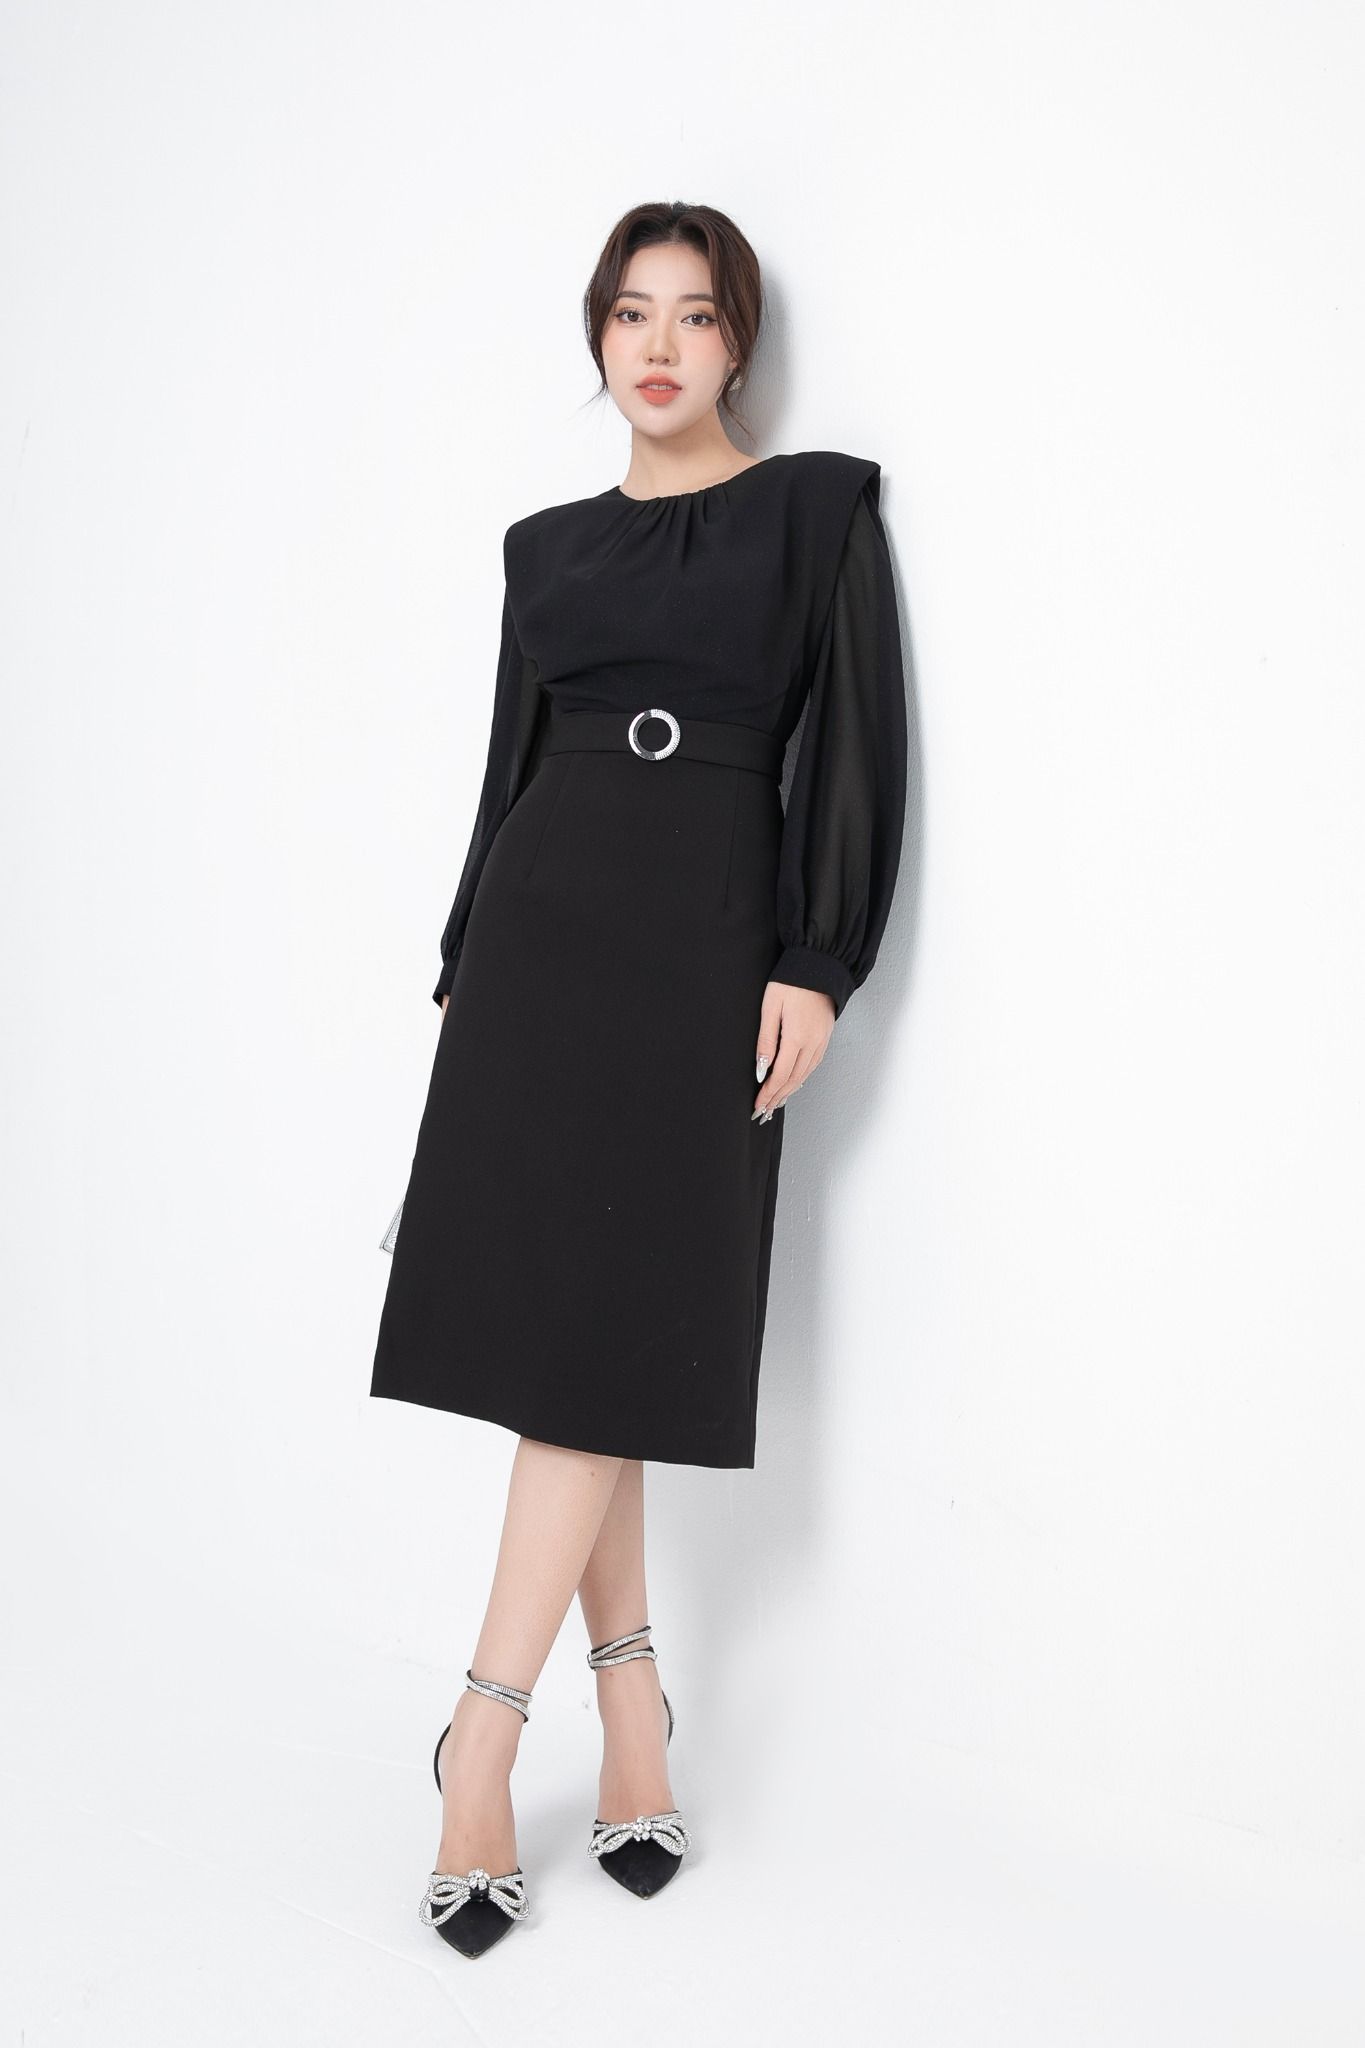 BELY | V746 - Váy đầm ôm A tiểu thư thiết kế tay dài pha voan - Đen, Hồng  vỏ đỗ - Bely | Thời trang cao cấp Bely